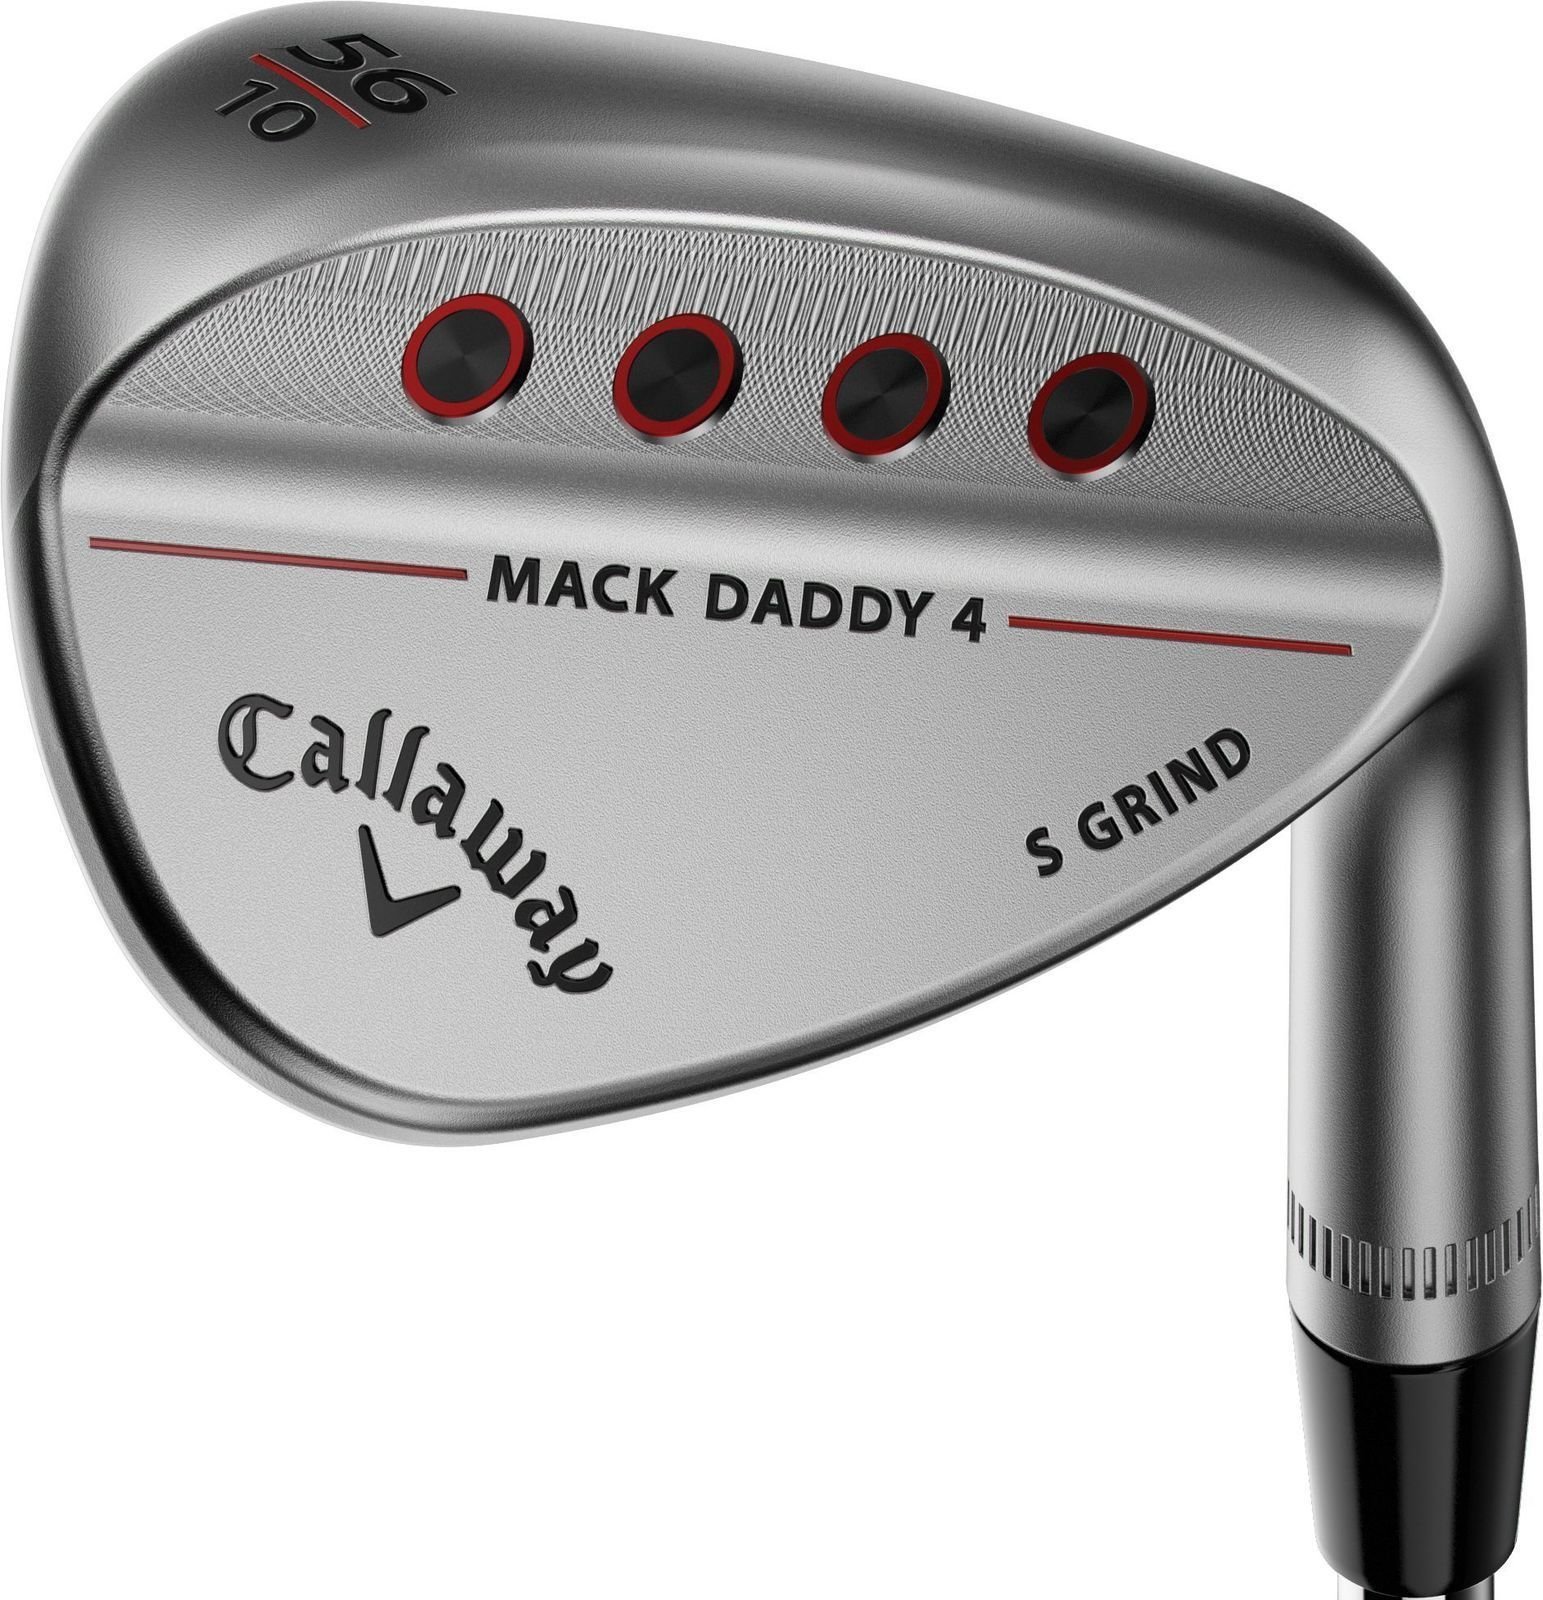 Λέσχες γκολφ - wedge Callaway Mack Daddy 4 Chrome Wedge 50-10 S-Grind Right Hand